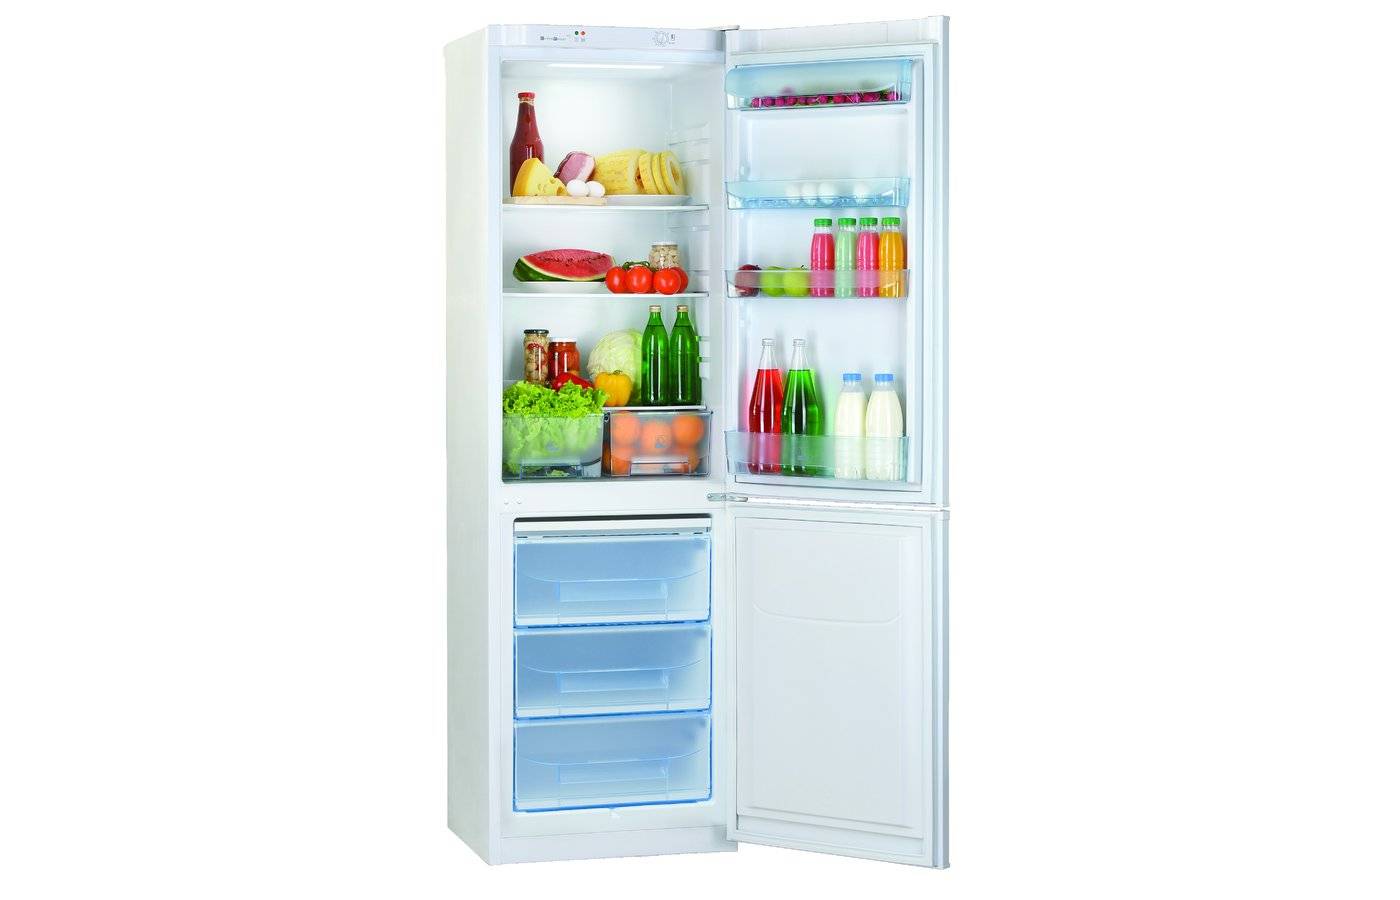 Какой холодильник лучше — атлант, бирюса, позис, веко, индезит. совет специалиста по выбору подходящей модели для дома